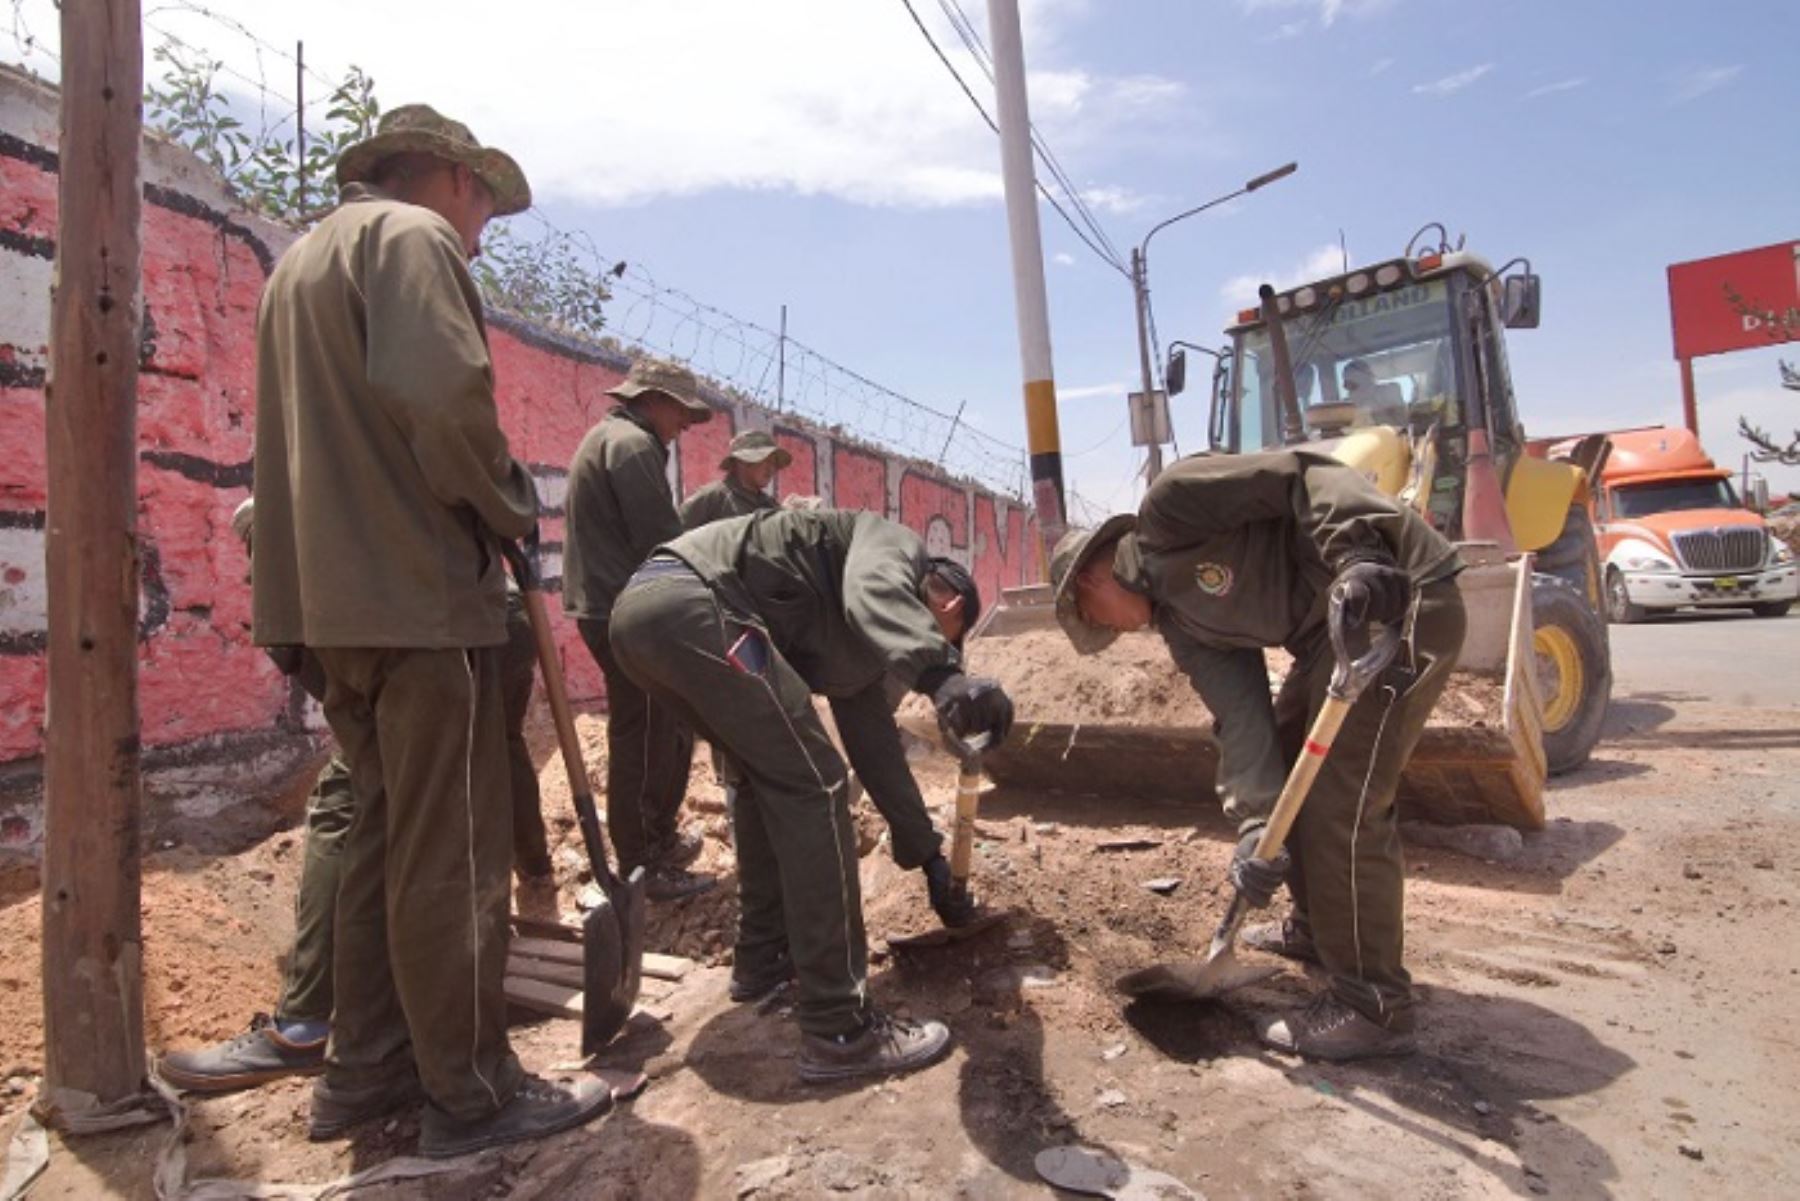 Soldados del Ejército limpian vías de ingreso a ciudad de Arequipa afectadas por protestas. Foto: Gobierno regional .